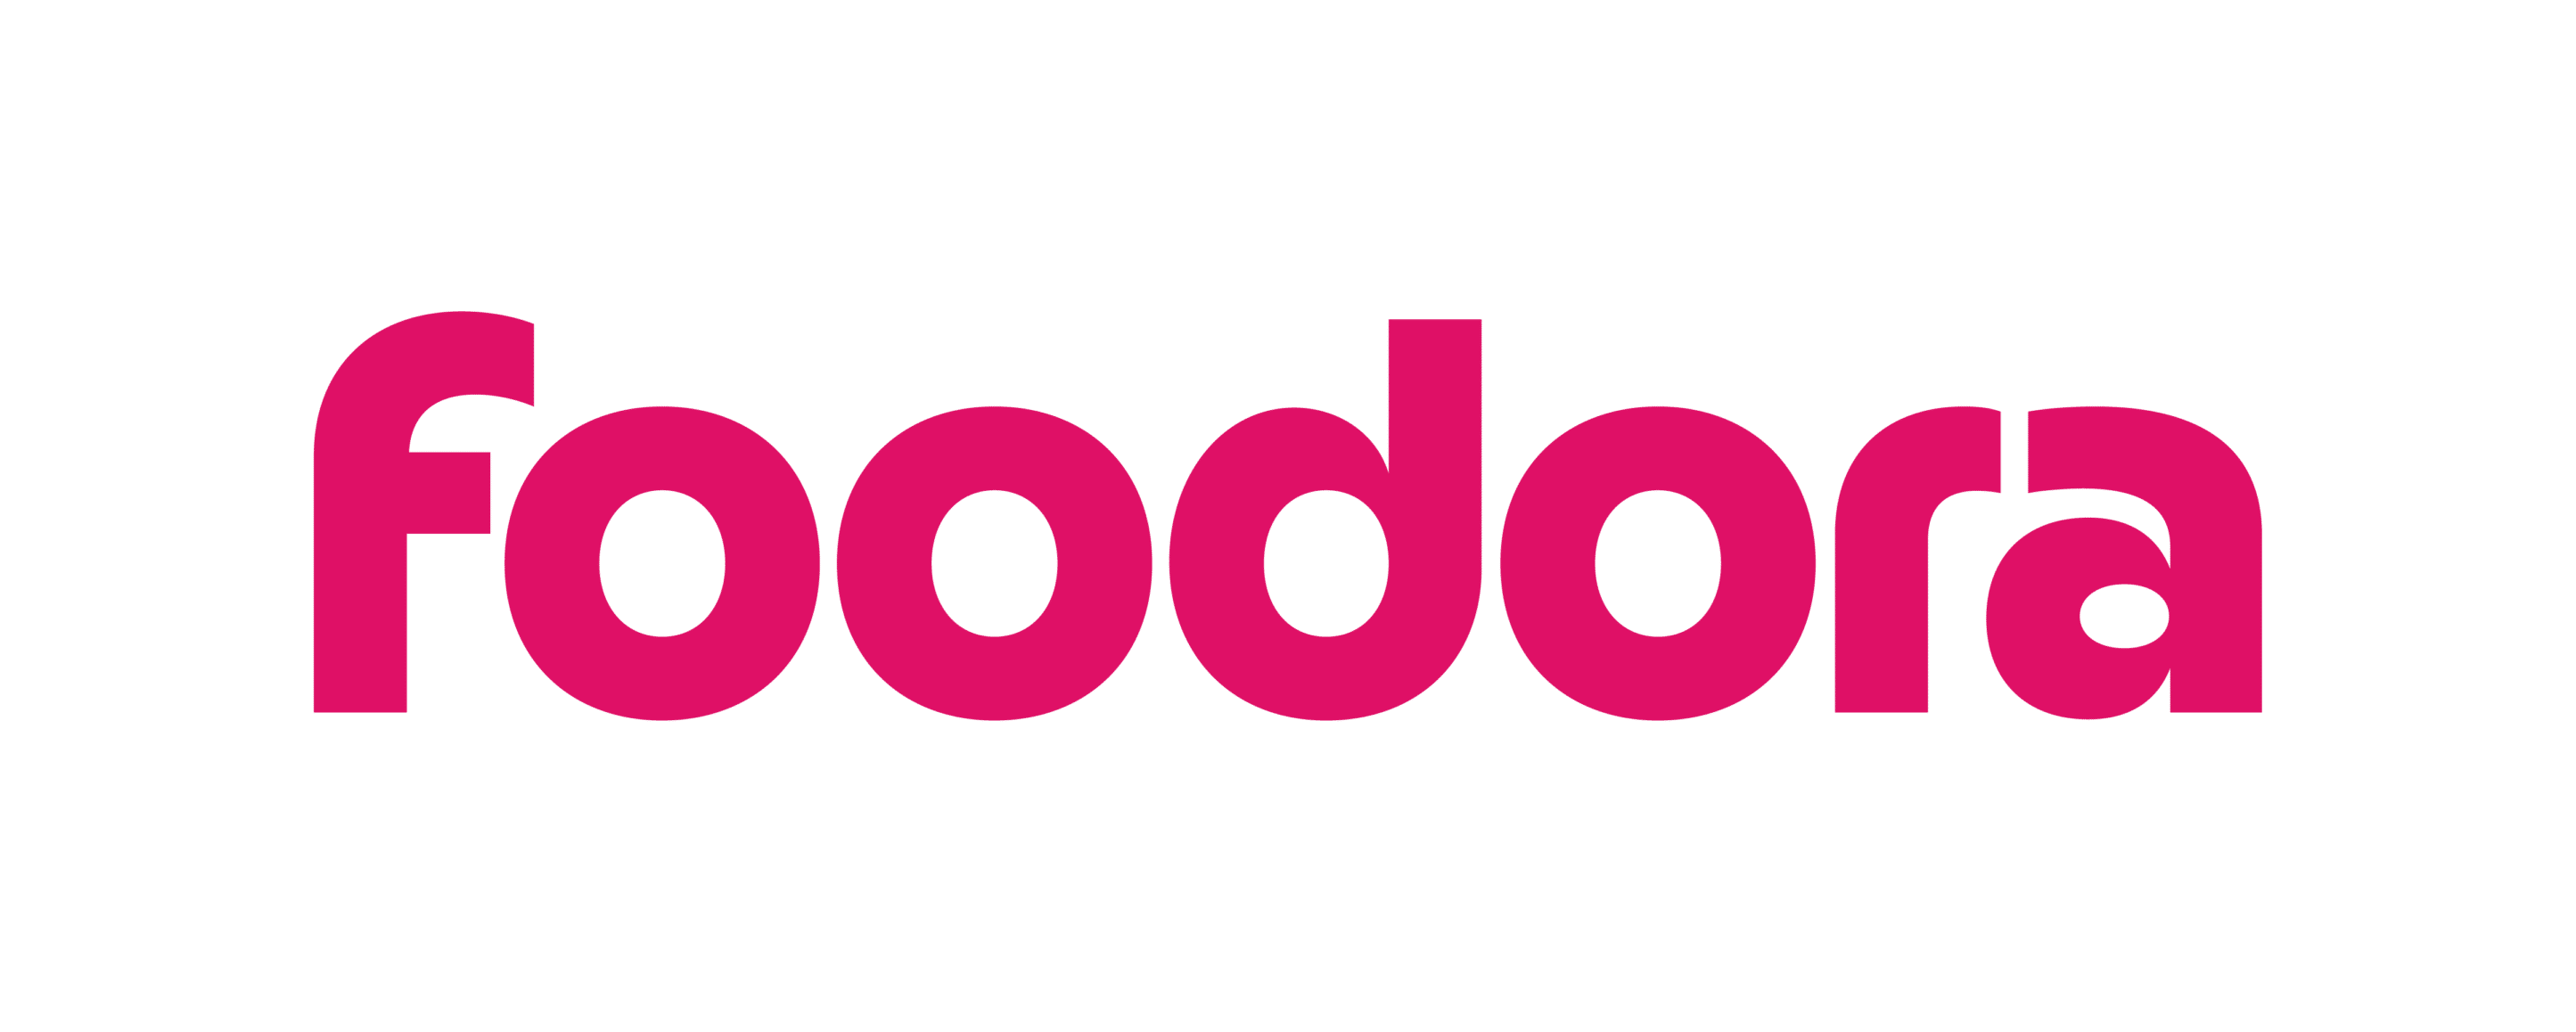 foodora_logo